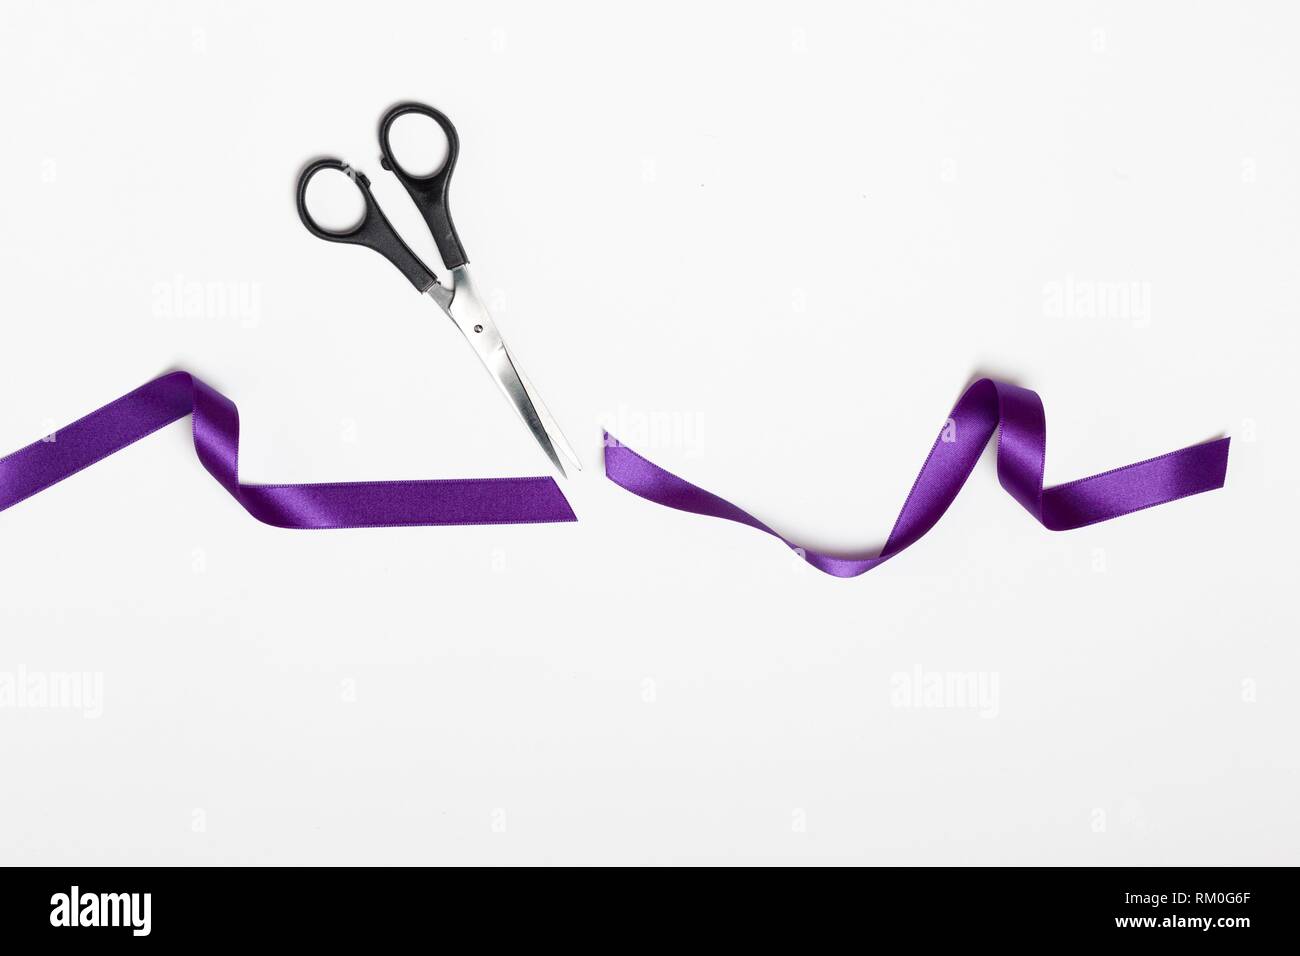 Symbole de coupe ciseaux tissu violet féminisme ruban sur fond blanc Banque D'Images